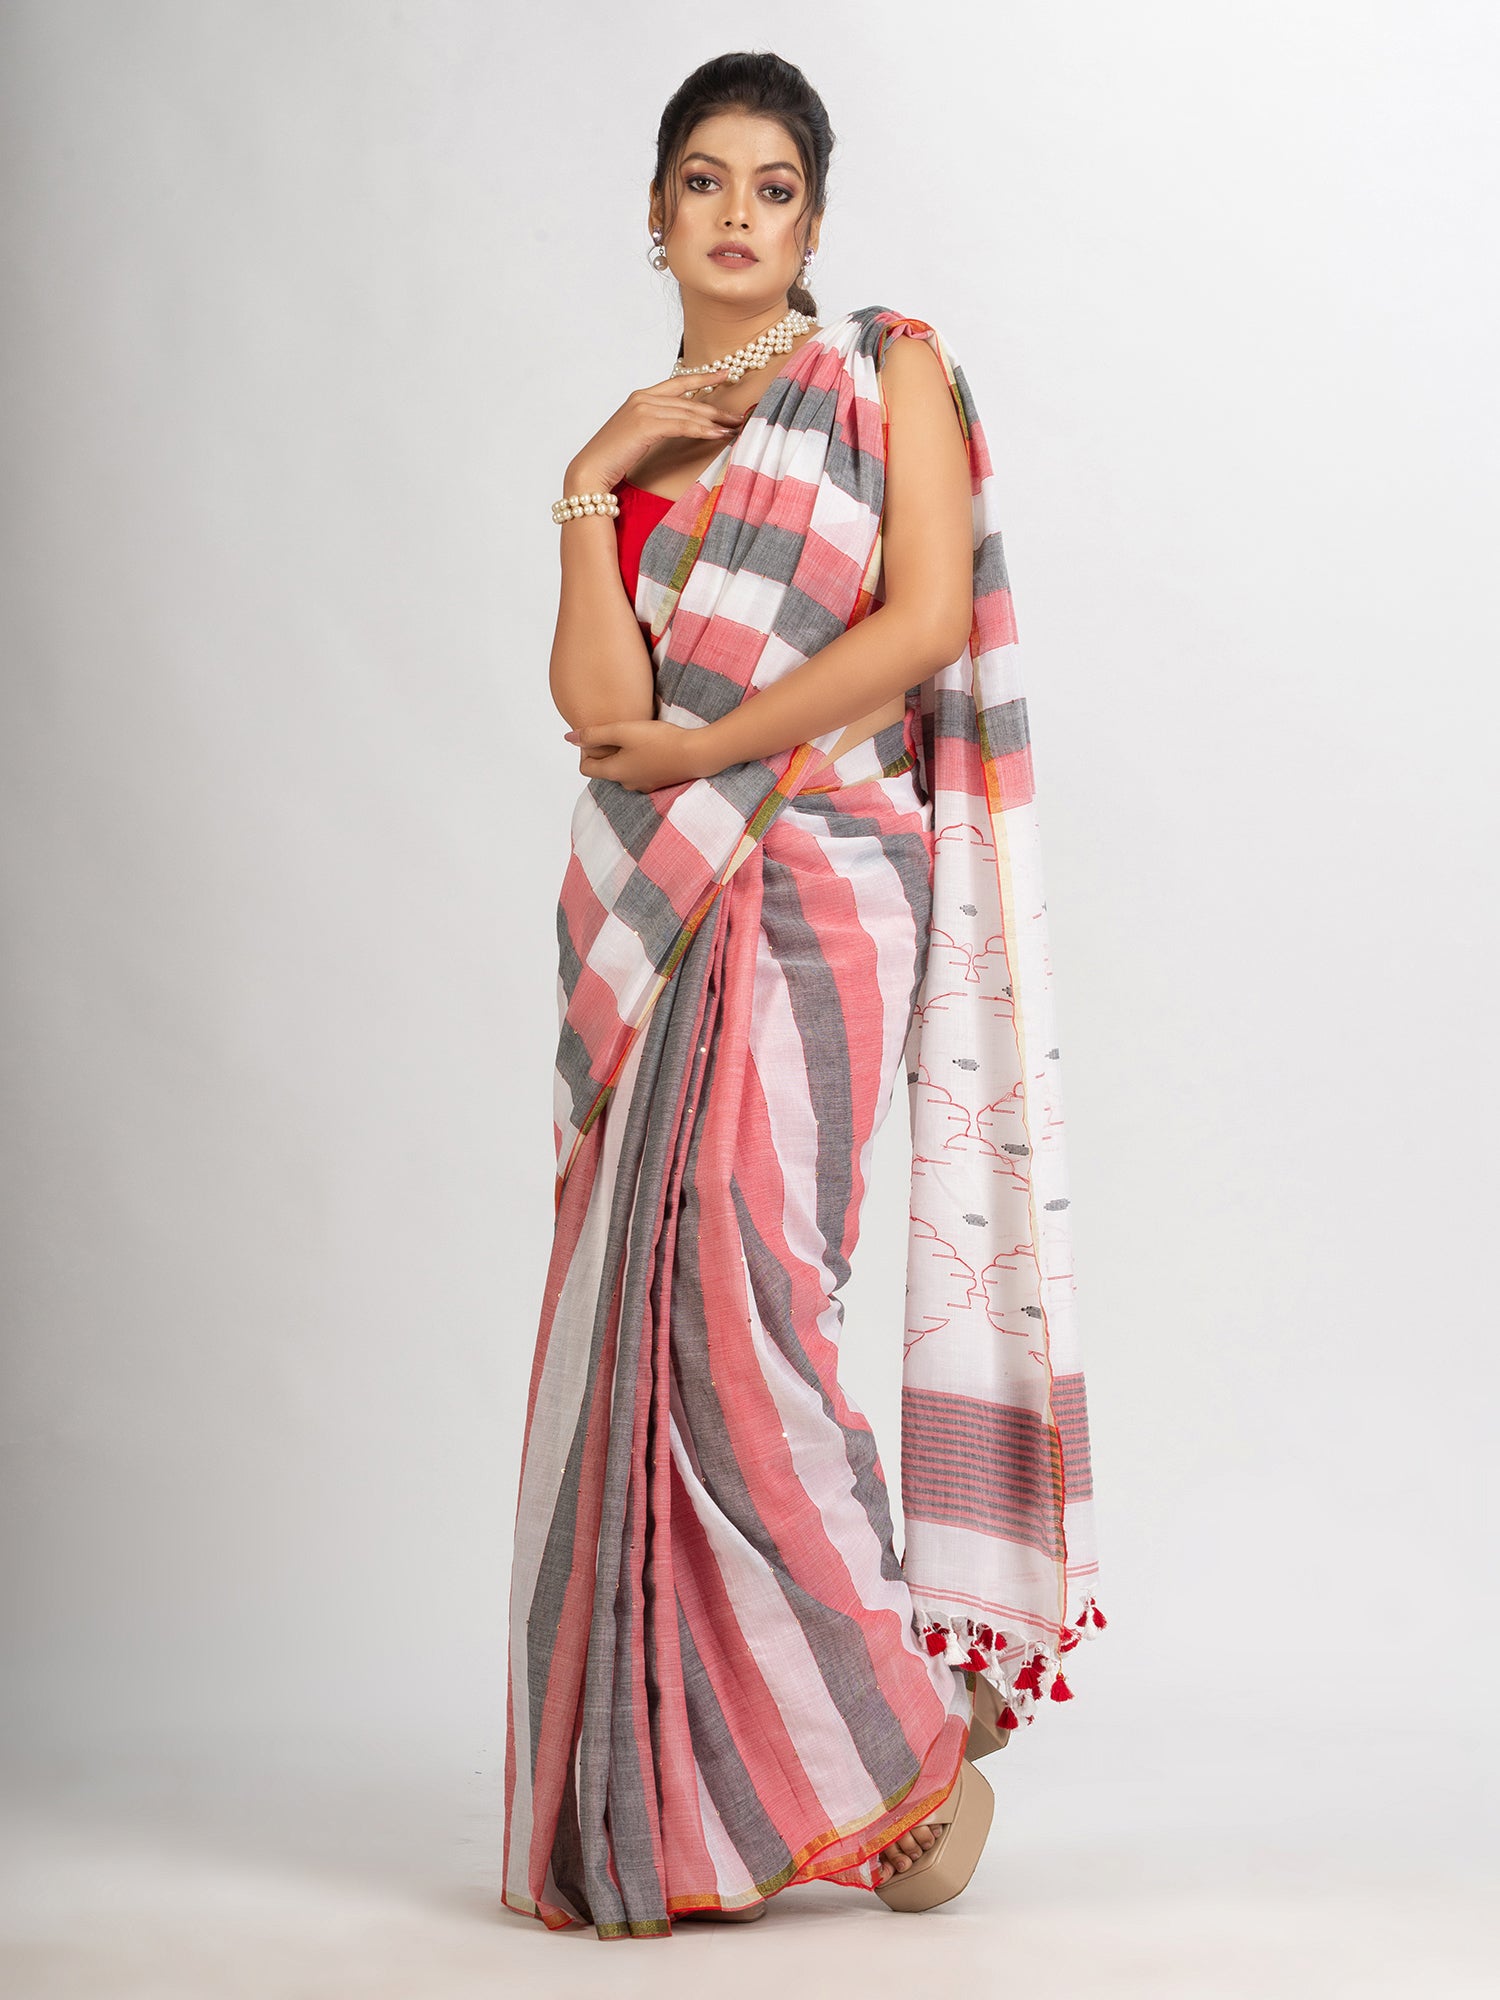 Women's White Black and Red Stipe Handwoven Cotton Jamdani handloom Saree - Angoshobha